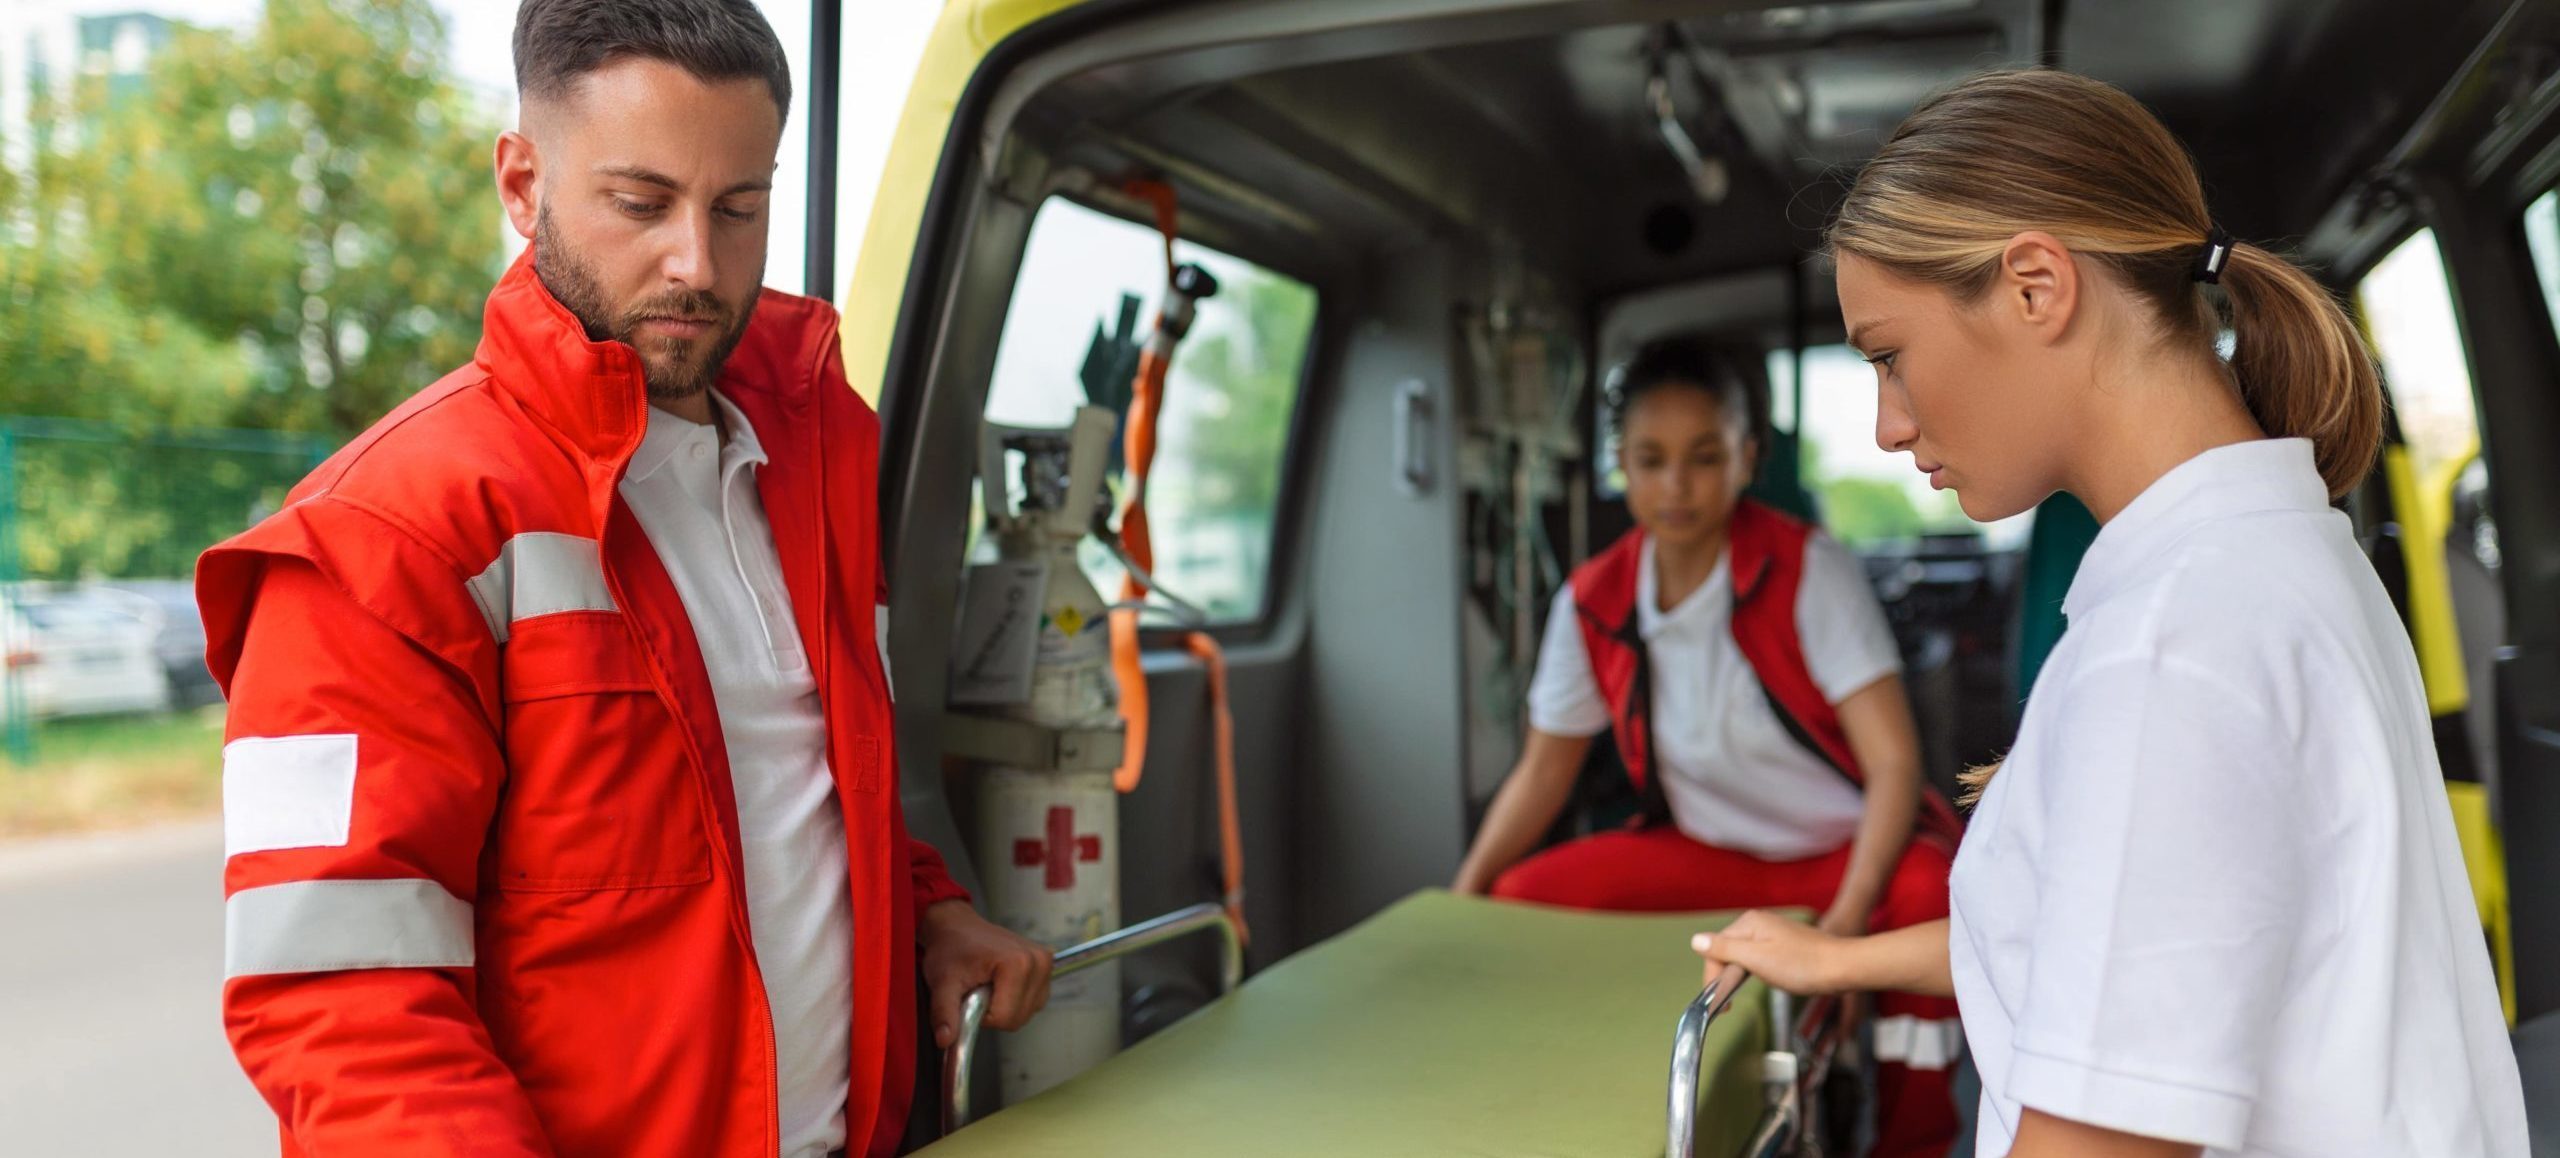 Comment faciliter l’intervention des secours en cas d’urgence ?